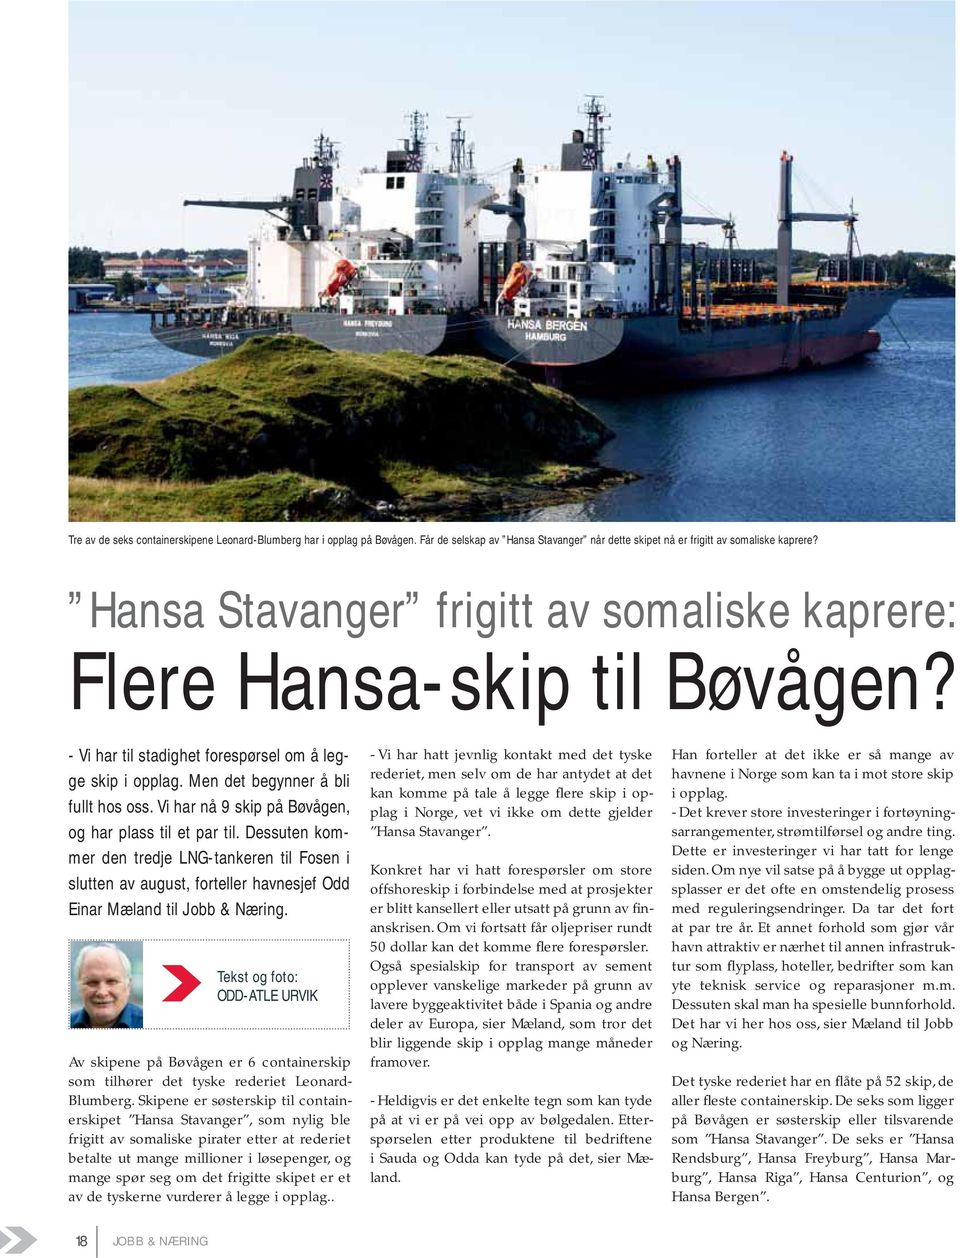 Vi har nå 9 skip på Bøvågen, og har plass til et par til. Dessuten kommer den tredje LNG-tankeren til Fosen i slutten av august, forteller havnesjef Odd Einar Mæland til Jobb & Næring.